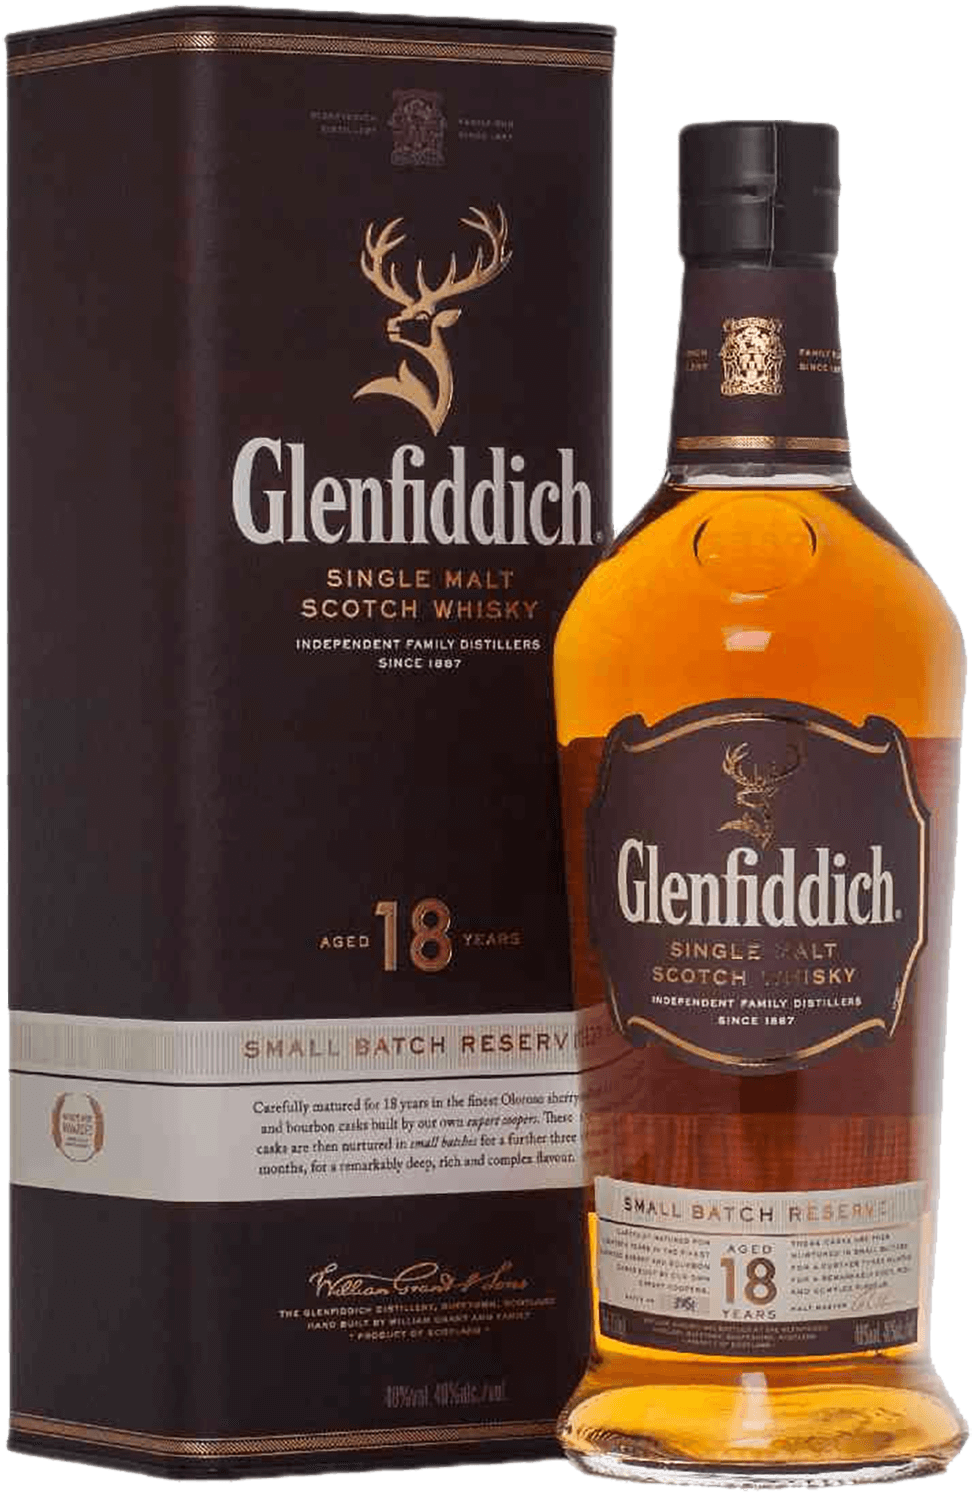 Glenfiddich 18 y.o. Single Malt Scotch Whisky (gift box)